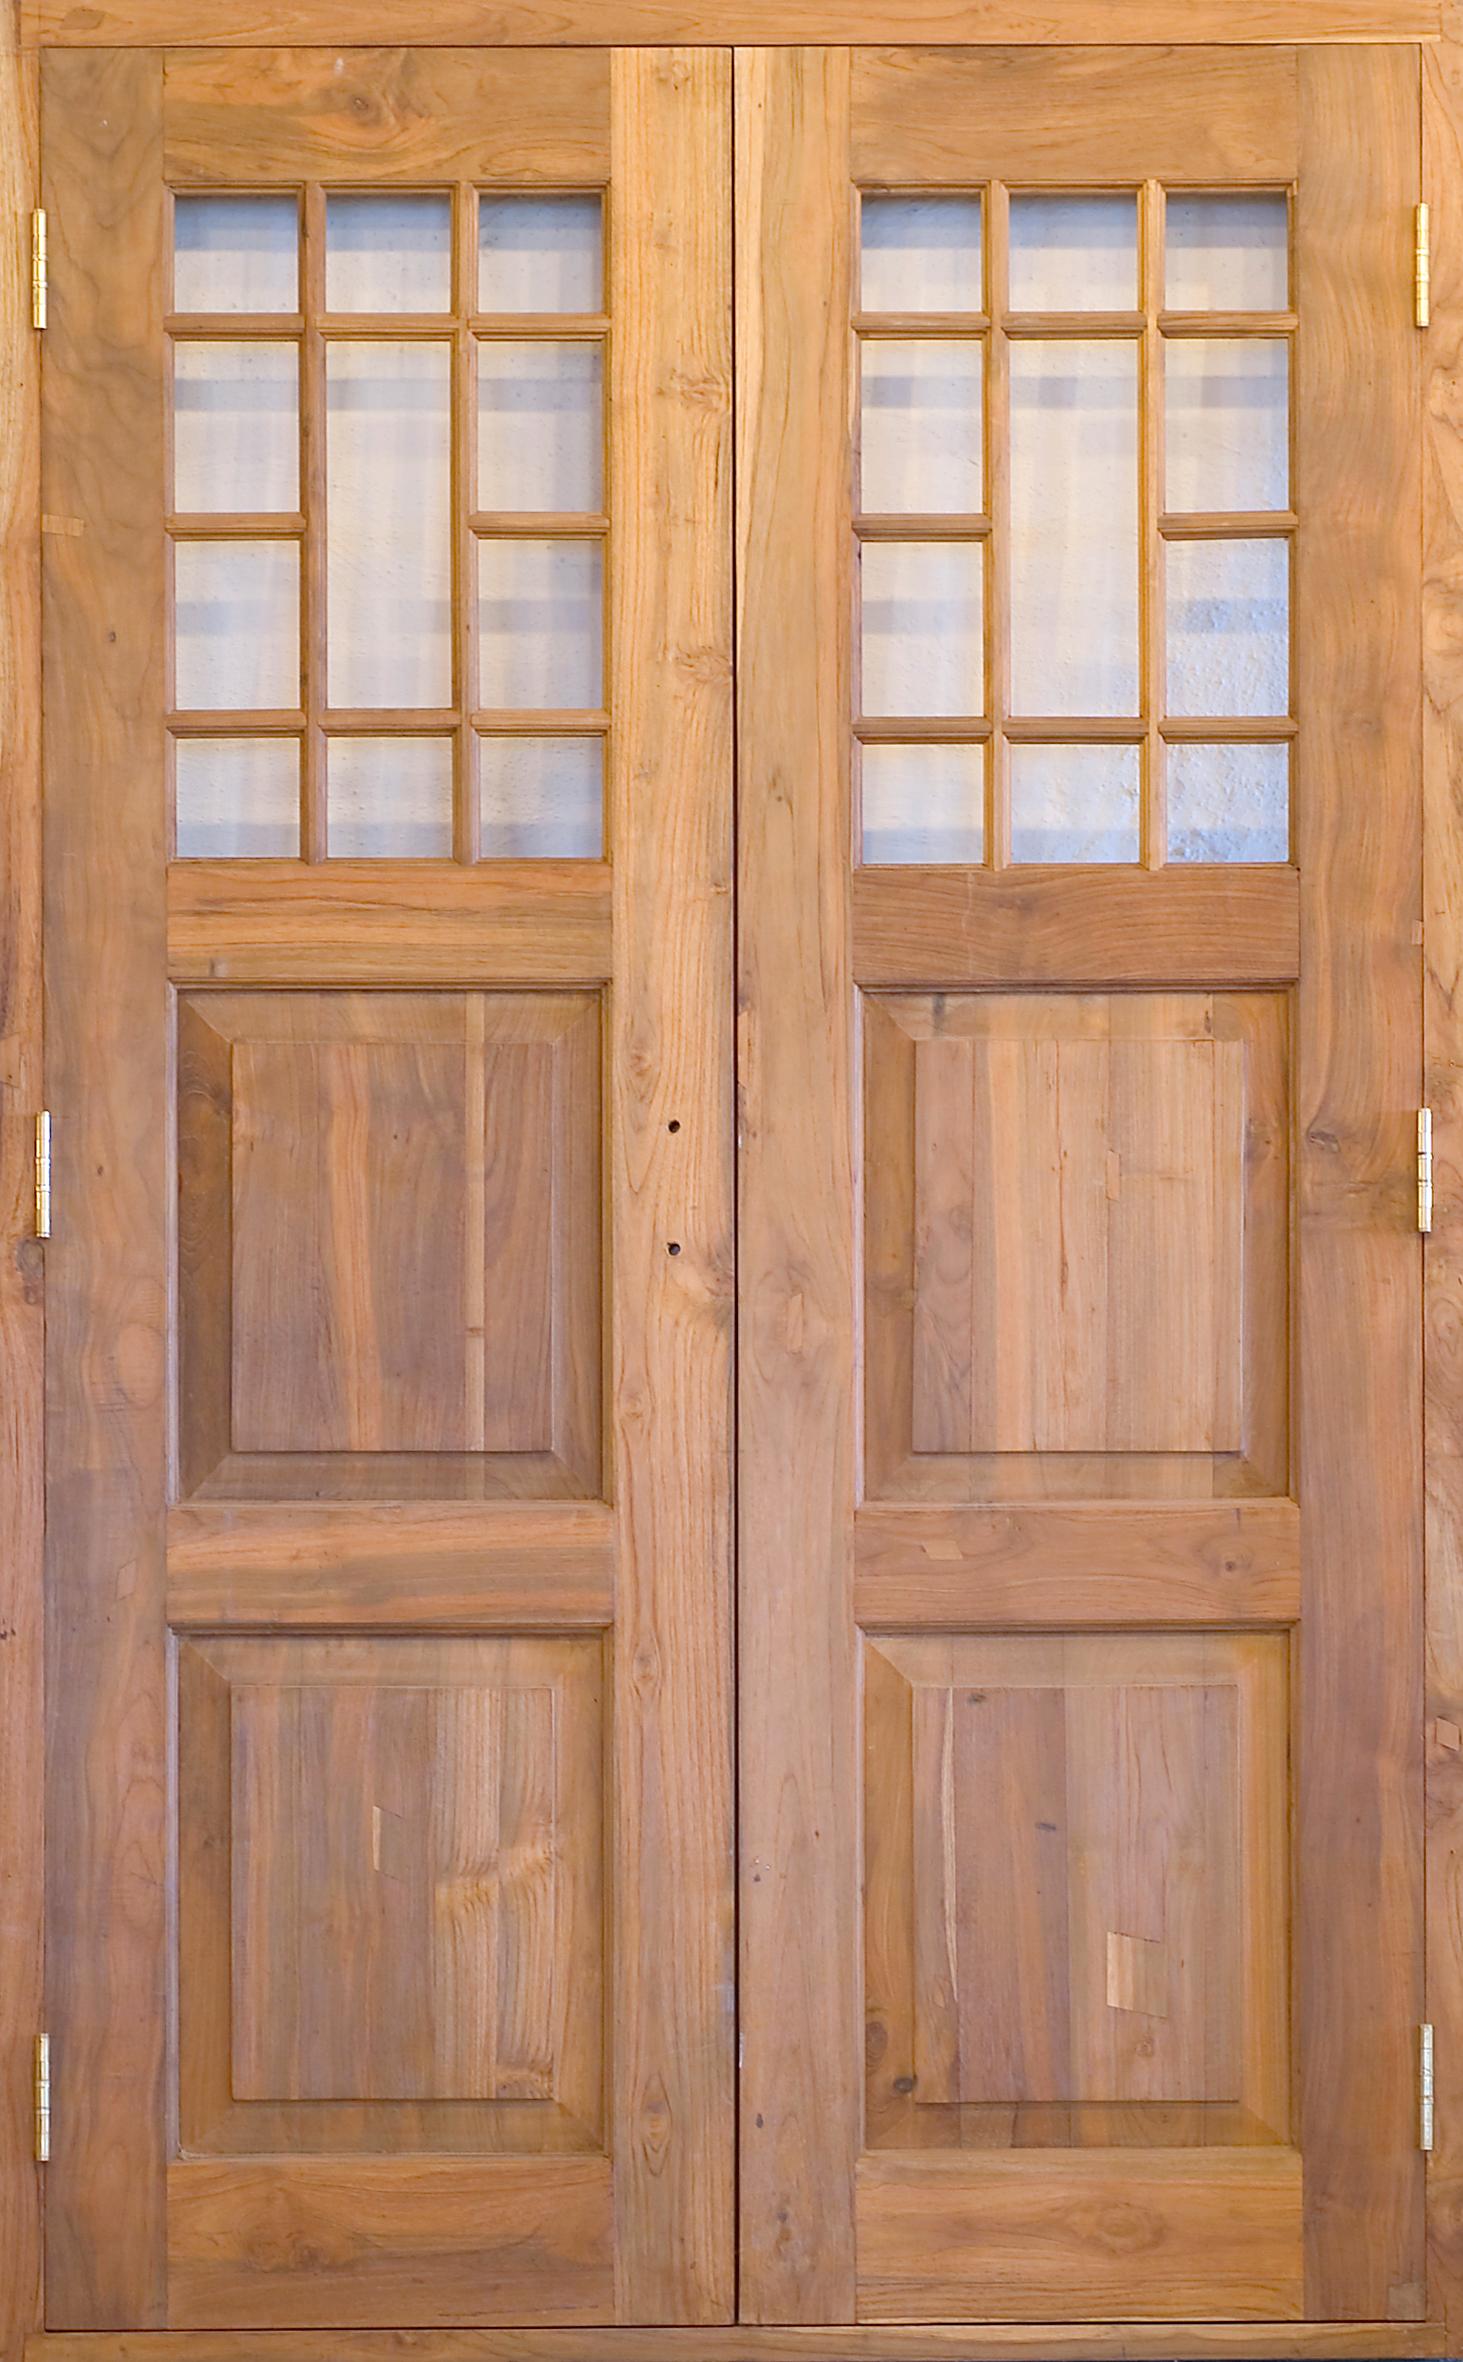 Två fina ytterdörrar i teak från Qvesarum i Skåne, som nytillverkar teakdörrar i gammal stil. Ovan ”Simrishamn”, 17 500 kr, t.v. ”Ekestad, 24 500 kr.